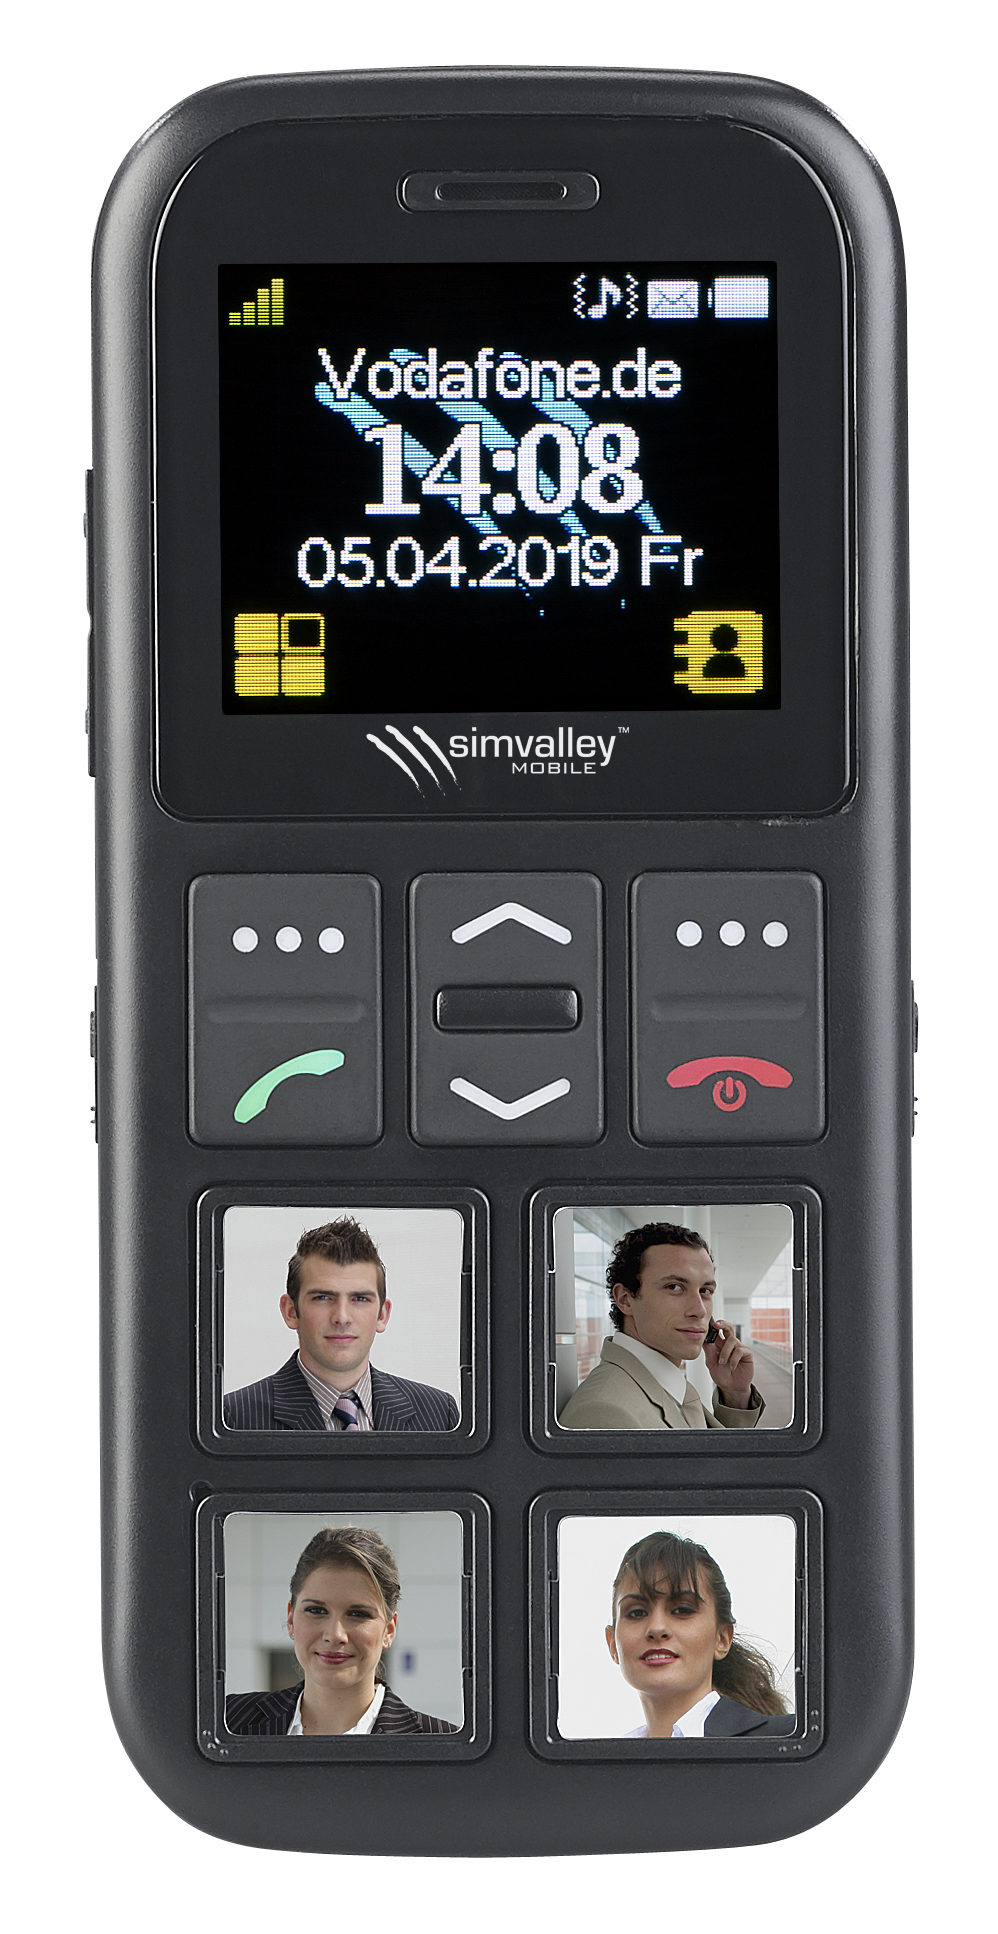 Téléphone mobile RX-820.gps, Mobiles séniors